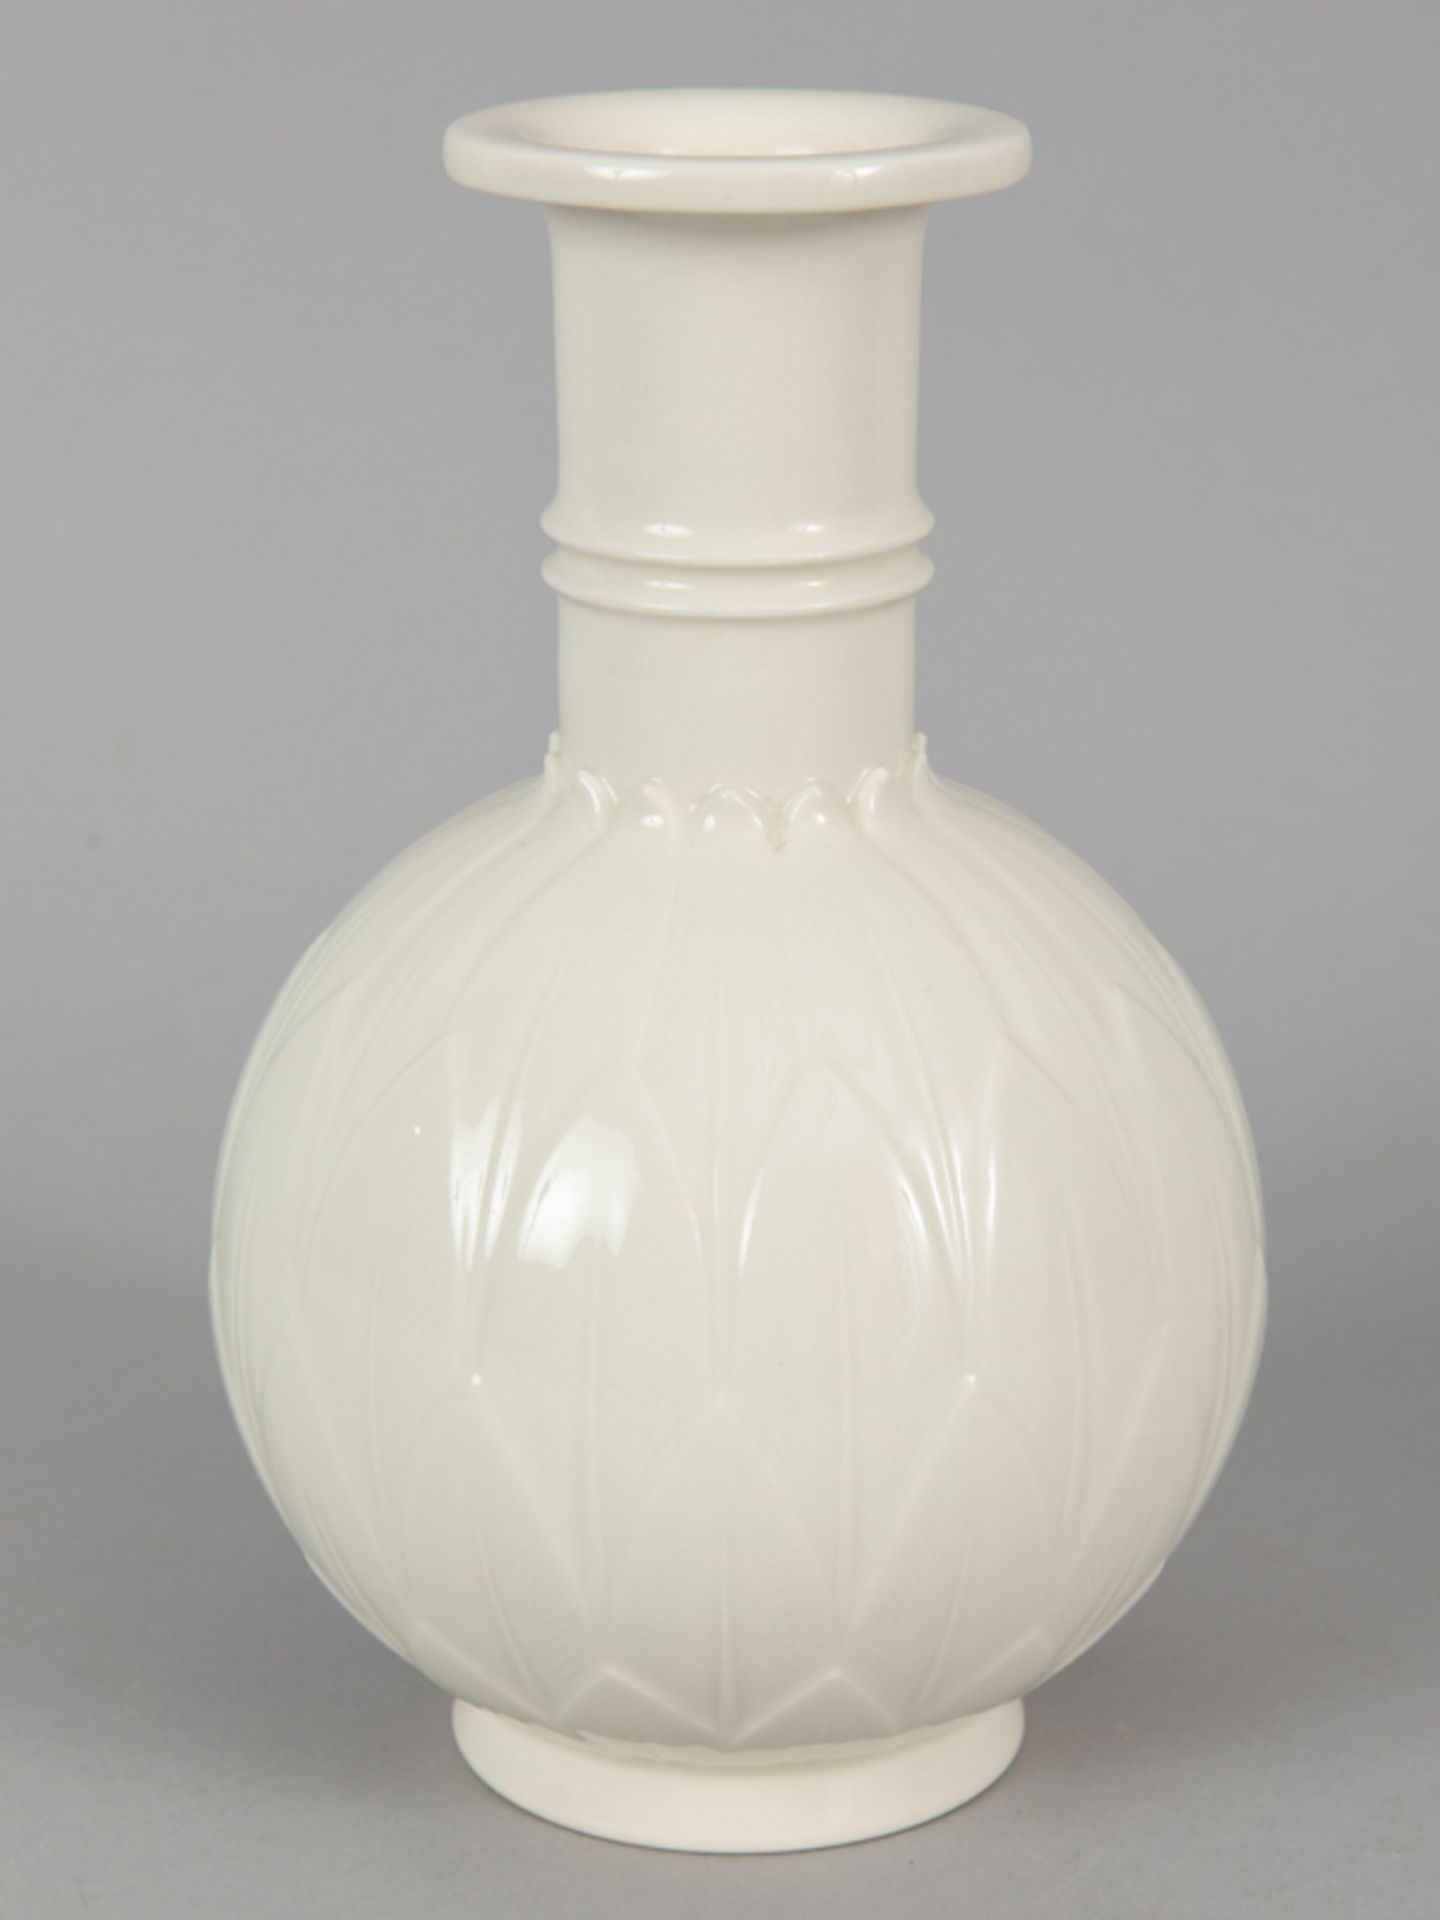 Vase mit Blattrelief, Entwurf Arno Malinowski, Royal Copenhagen, 20. Jh.